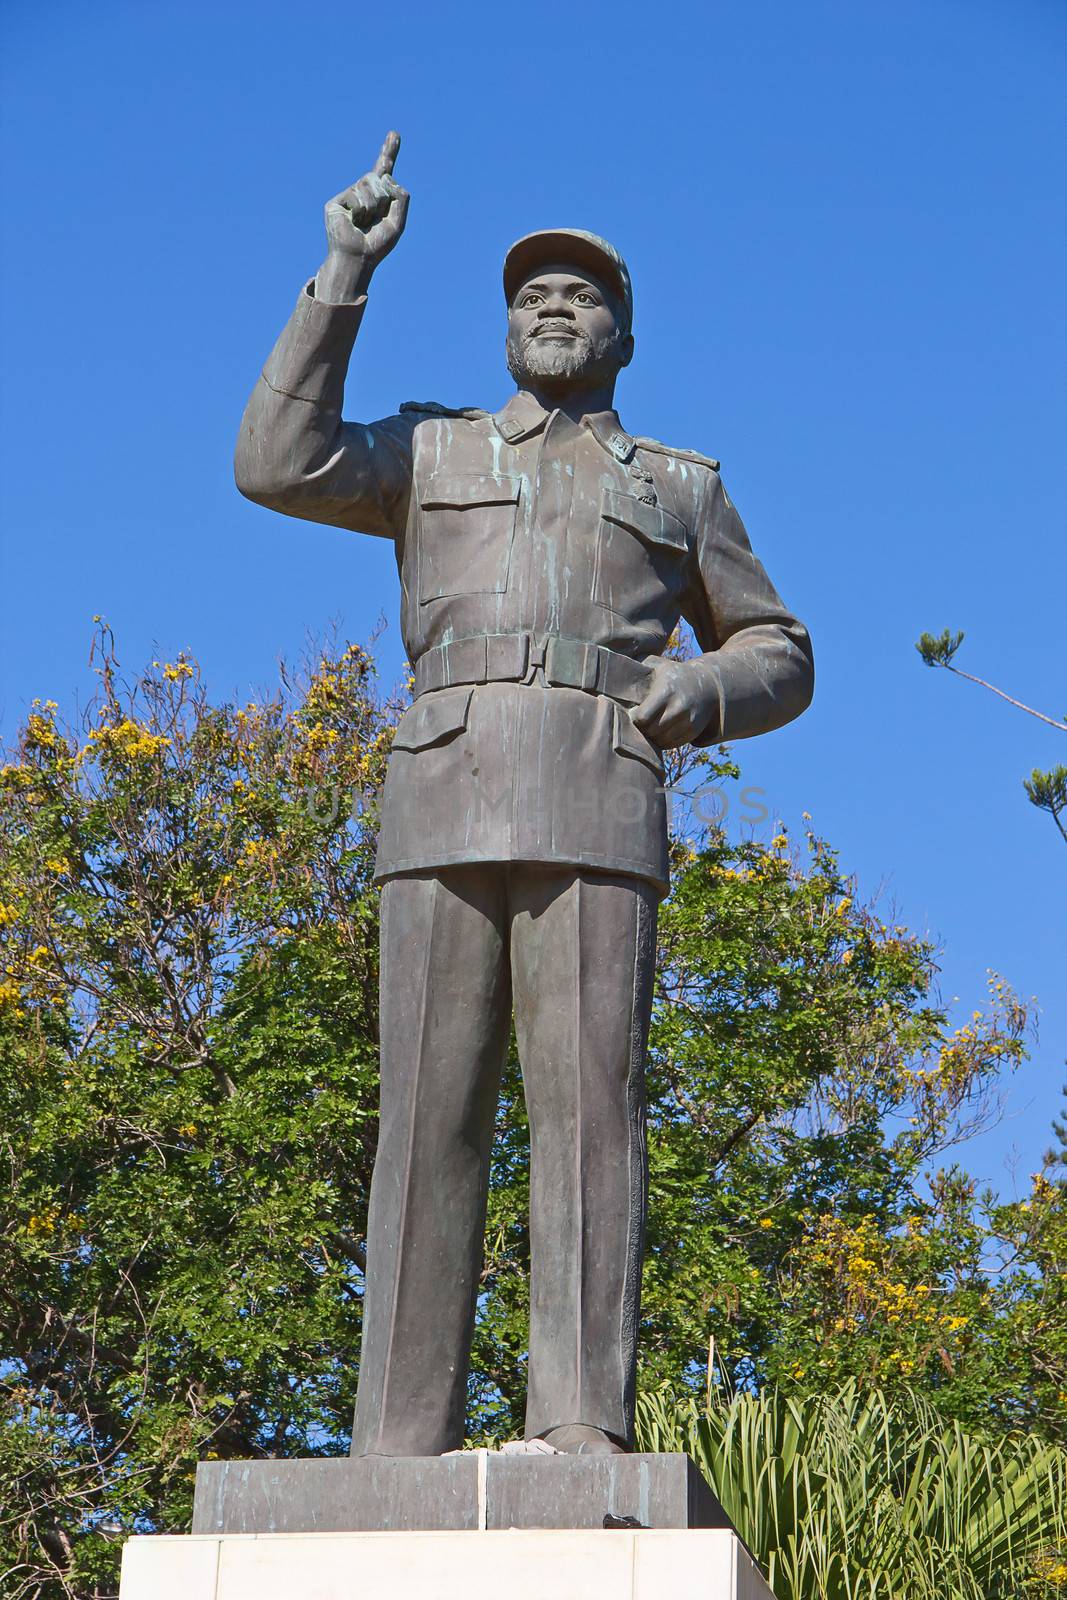 Statue of Michel Samora in Maputo, Mozambique